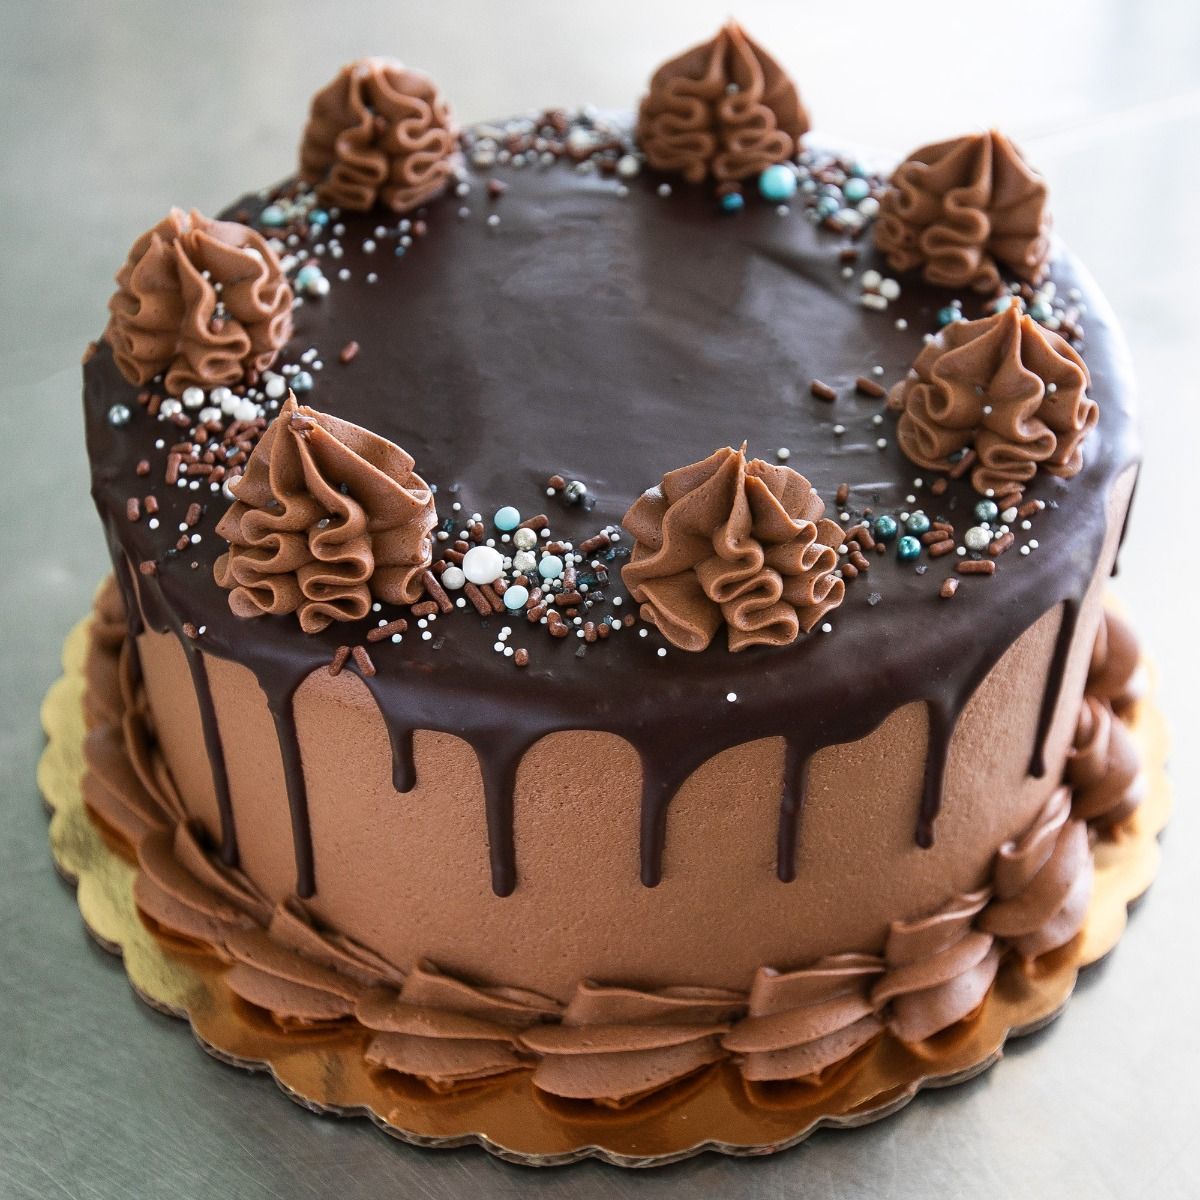 Ganache Glazed Chocolate Cake